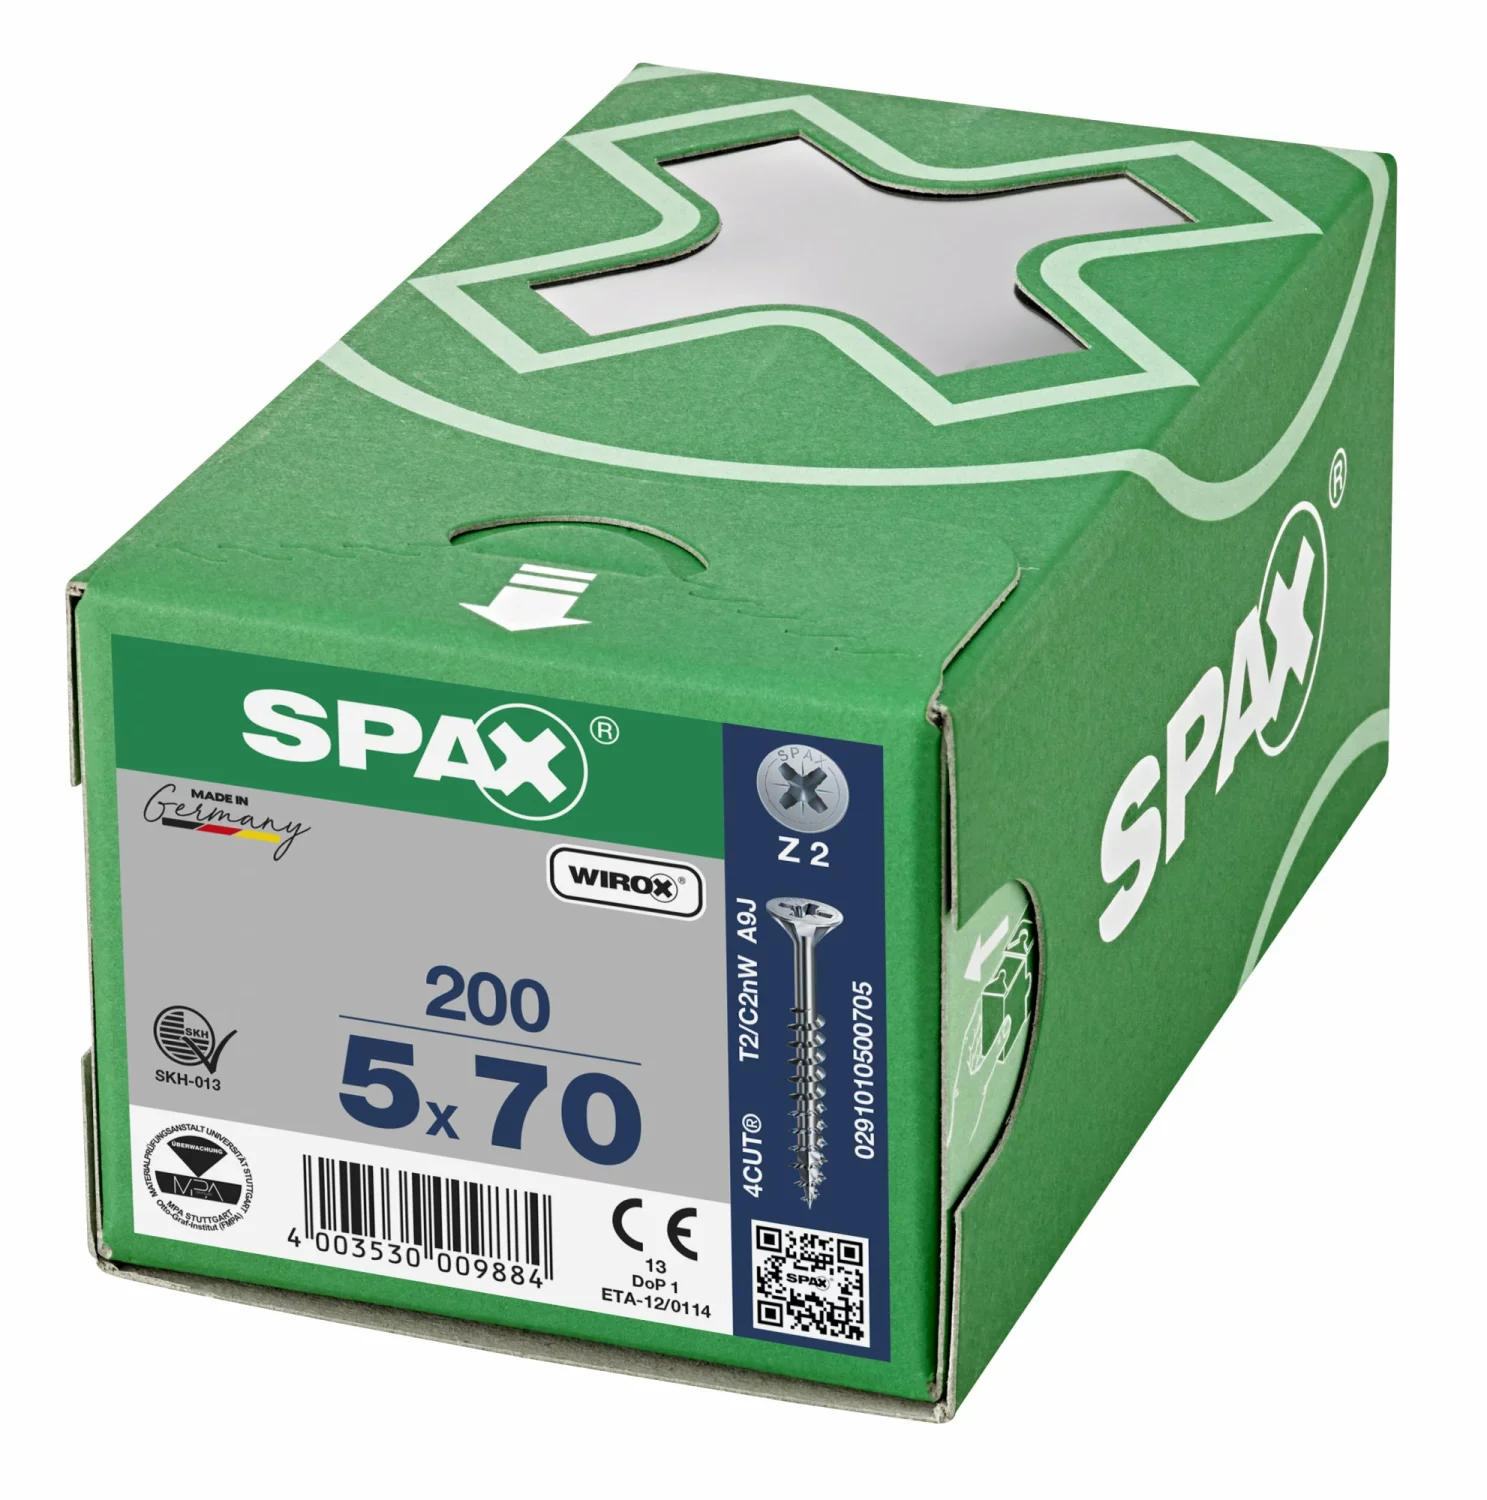 SPAX 291010500705 Universele schroef, Verzonken kop, 5 x 70, Deeldraad, Kruiskop Z2 - WIROX - 200 stuks